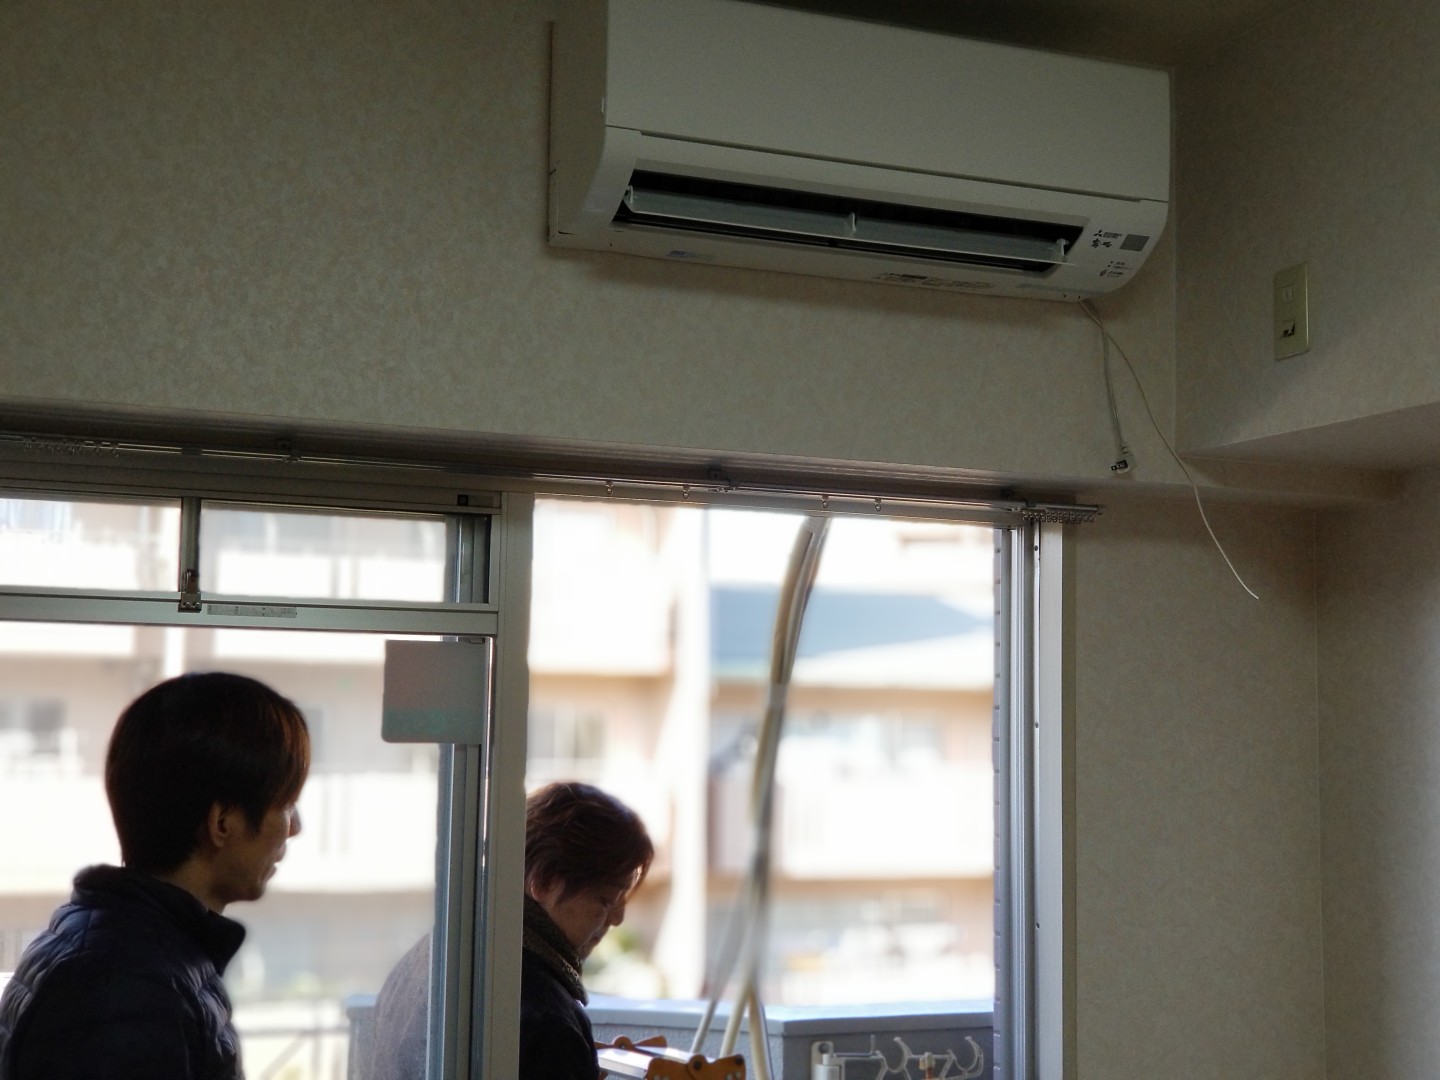 クロス張替時のエアコン事情 ユーキの活動日誌 名古屋の電気 空調工事会社 ユーキ